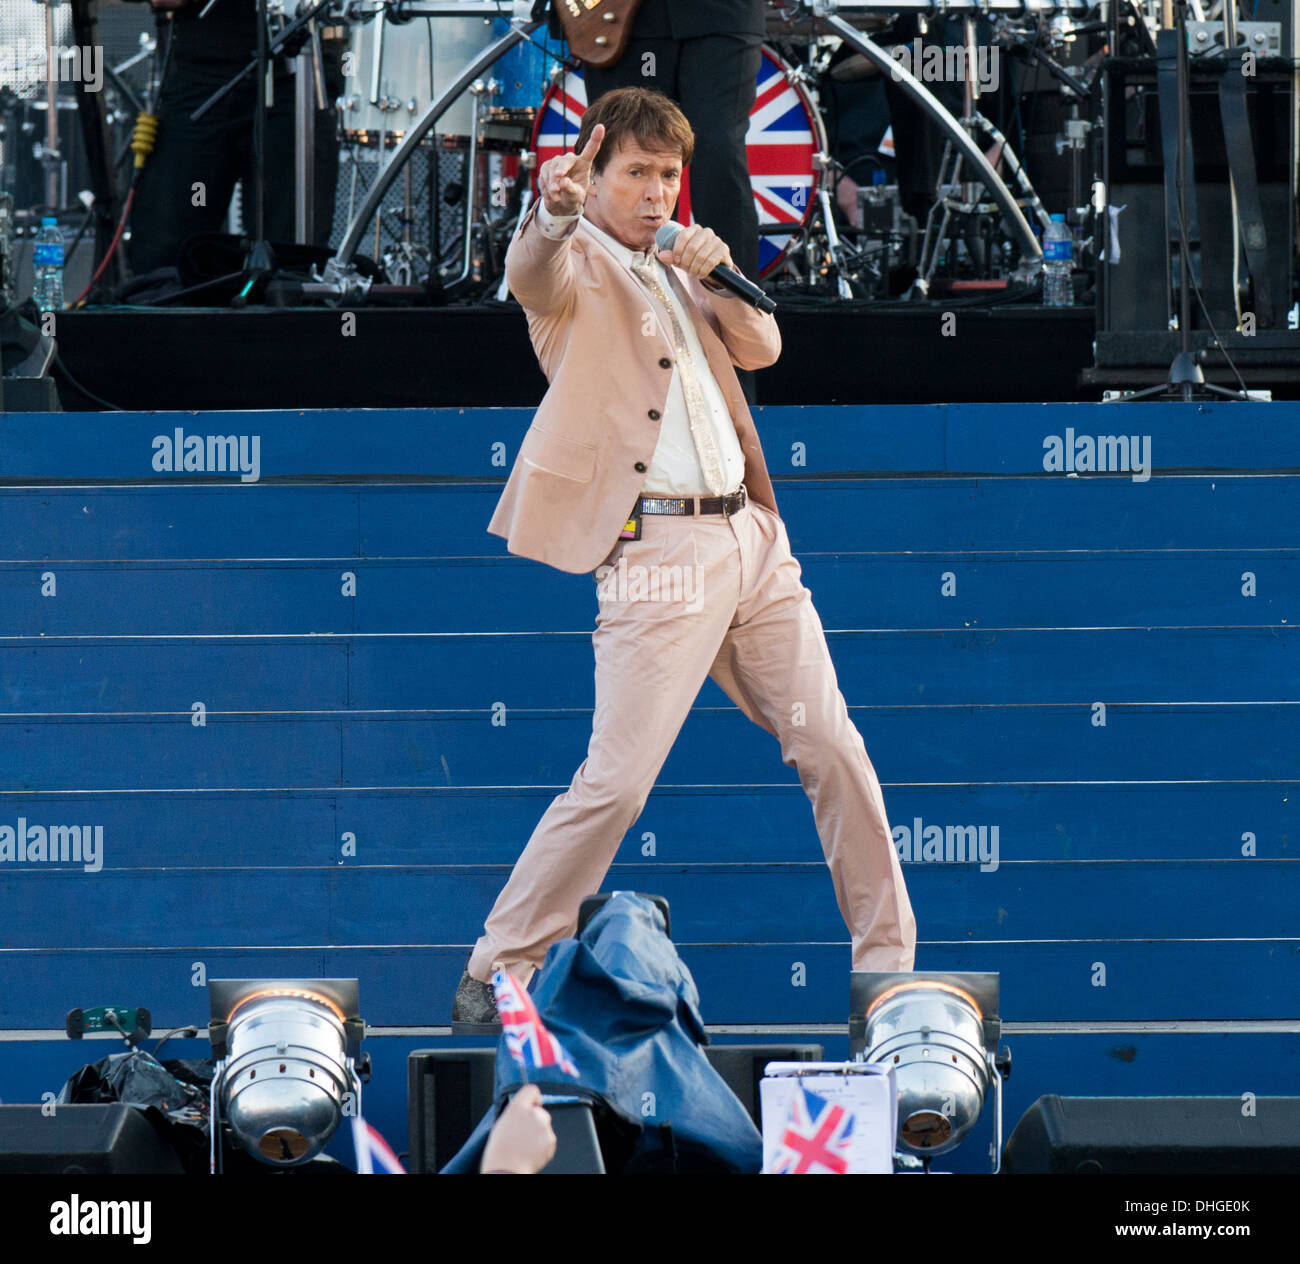 Un concierto celebrado en el centro comercial el 4 de junio de 2012 en el Palacio de Buckingham en Londres para celebrar su Majestad la Reina del Jubileo de Diamante. Foto de stock